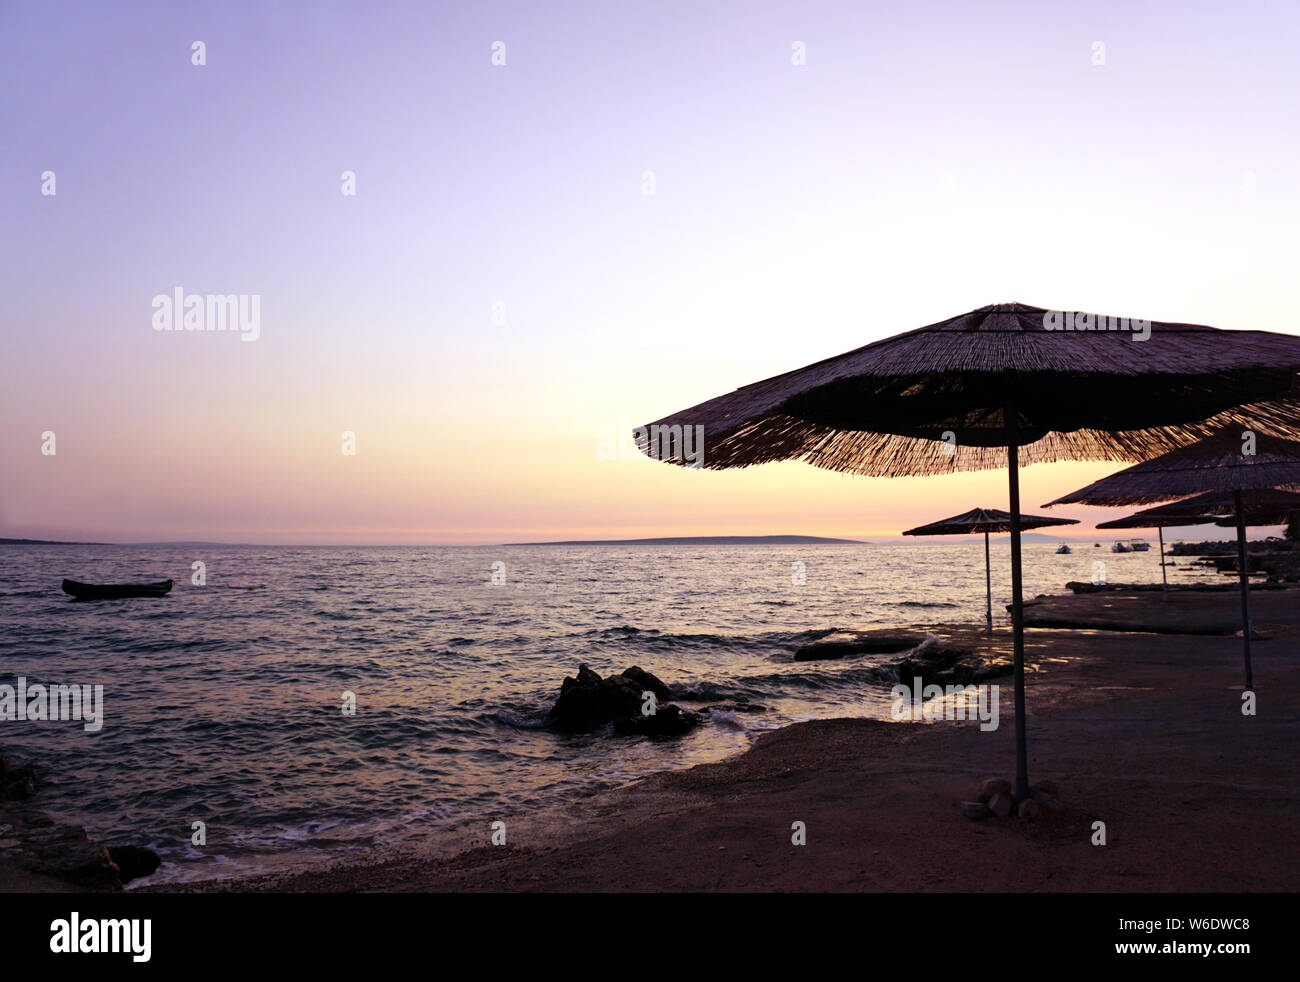 Il bambù ombrelloni sulla spiaggia vuota da sul mare al tramonto, con colori pastello del cielo e del mare in una bella serata estiva Foto Stock